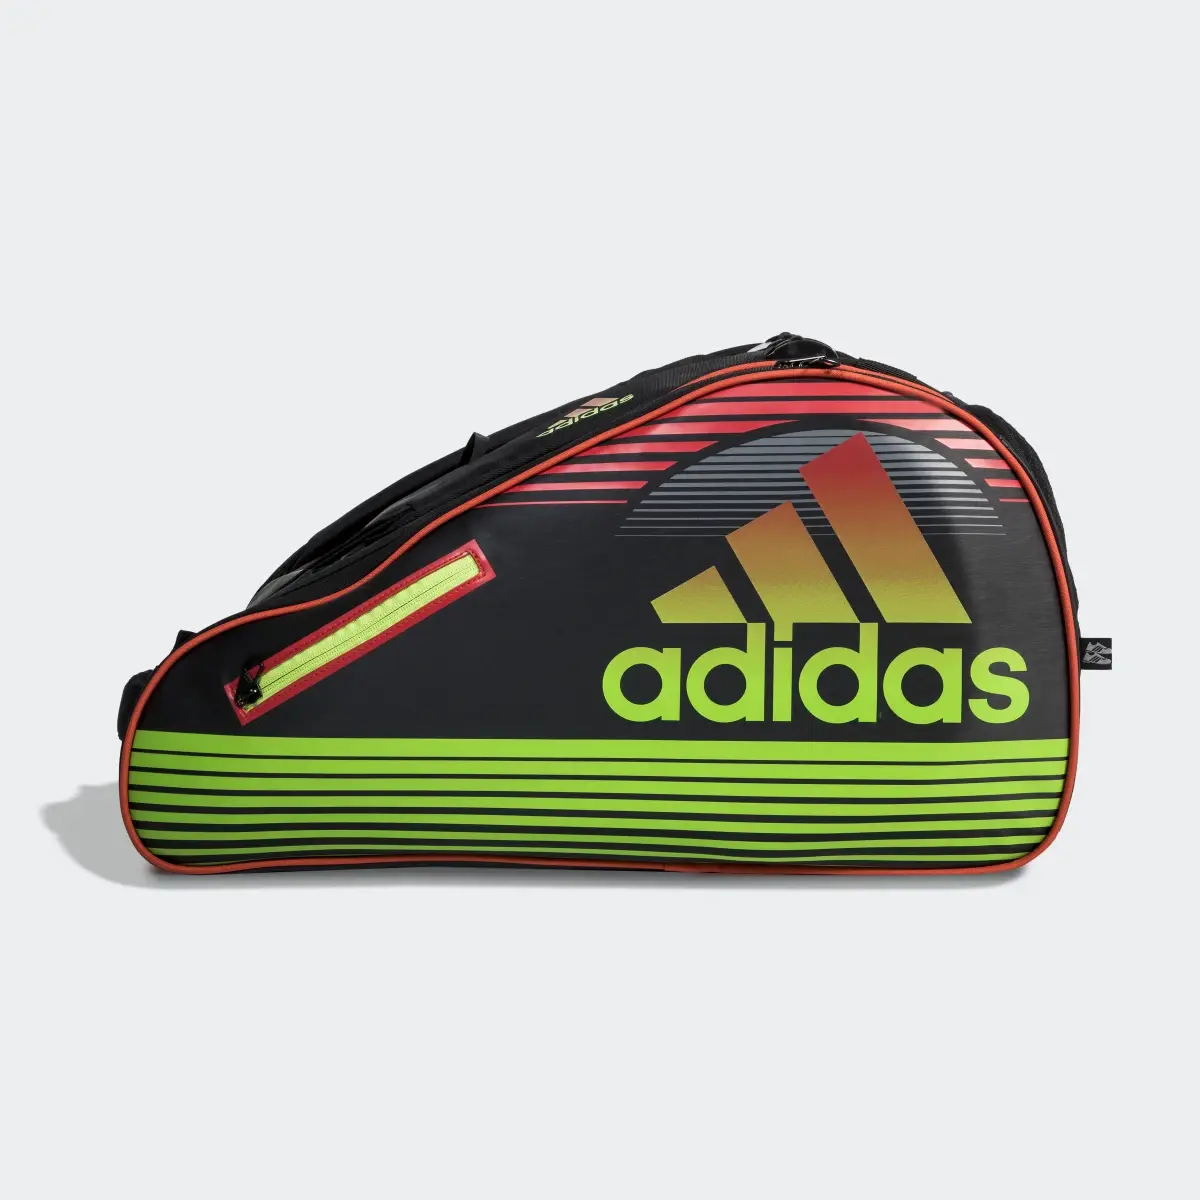 Adidas Tour Racquet Bag. 2